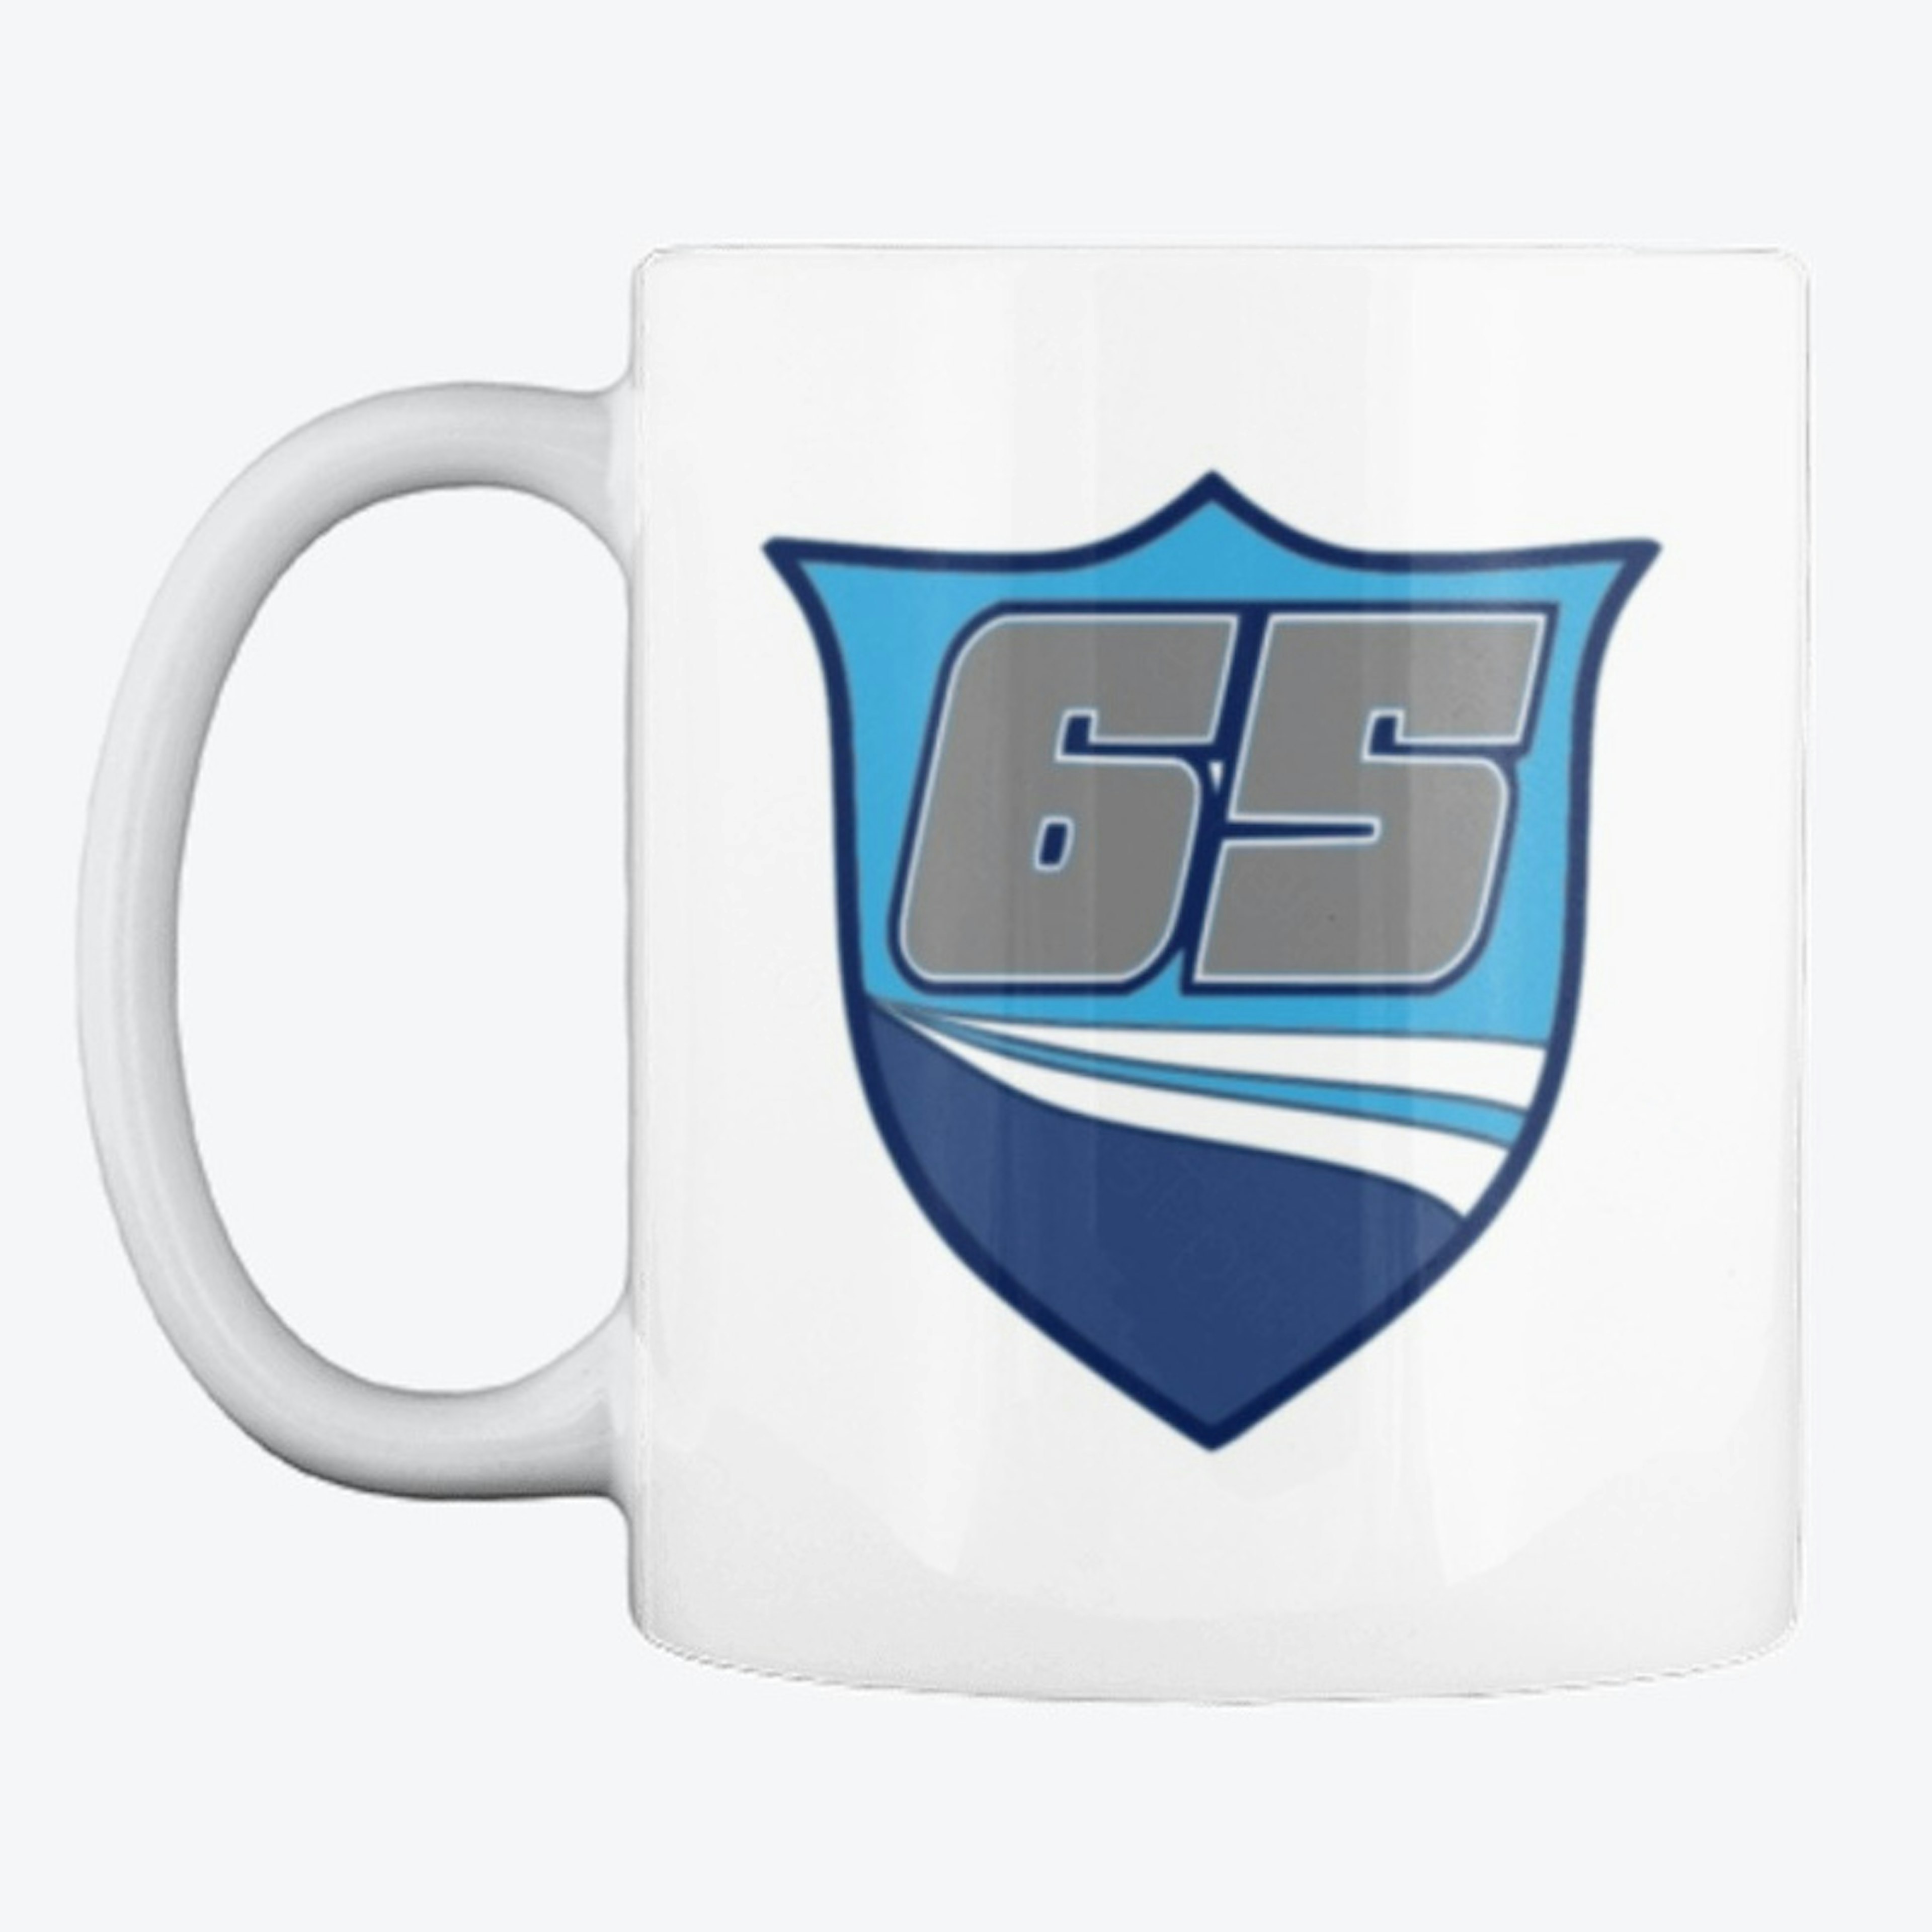 Number 65 team mug